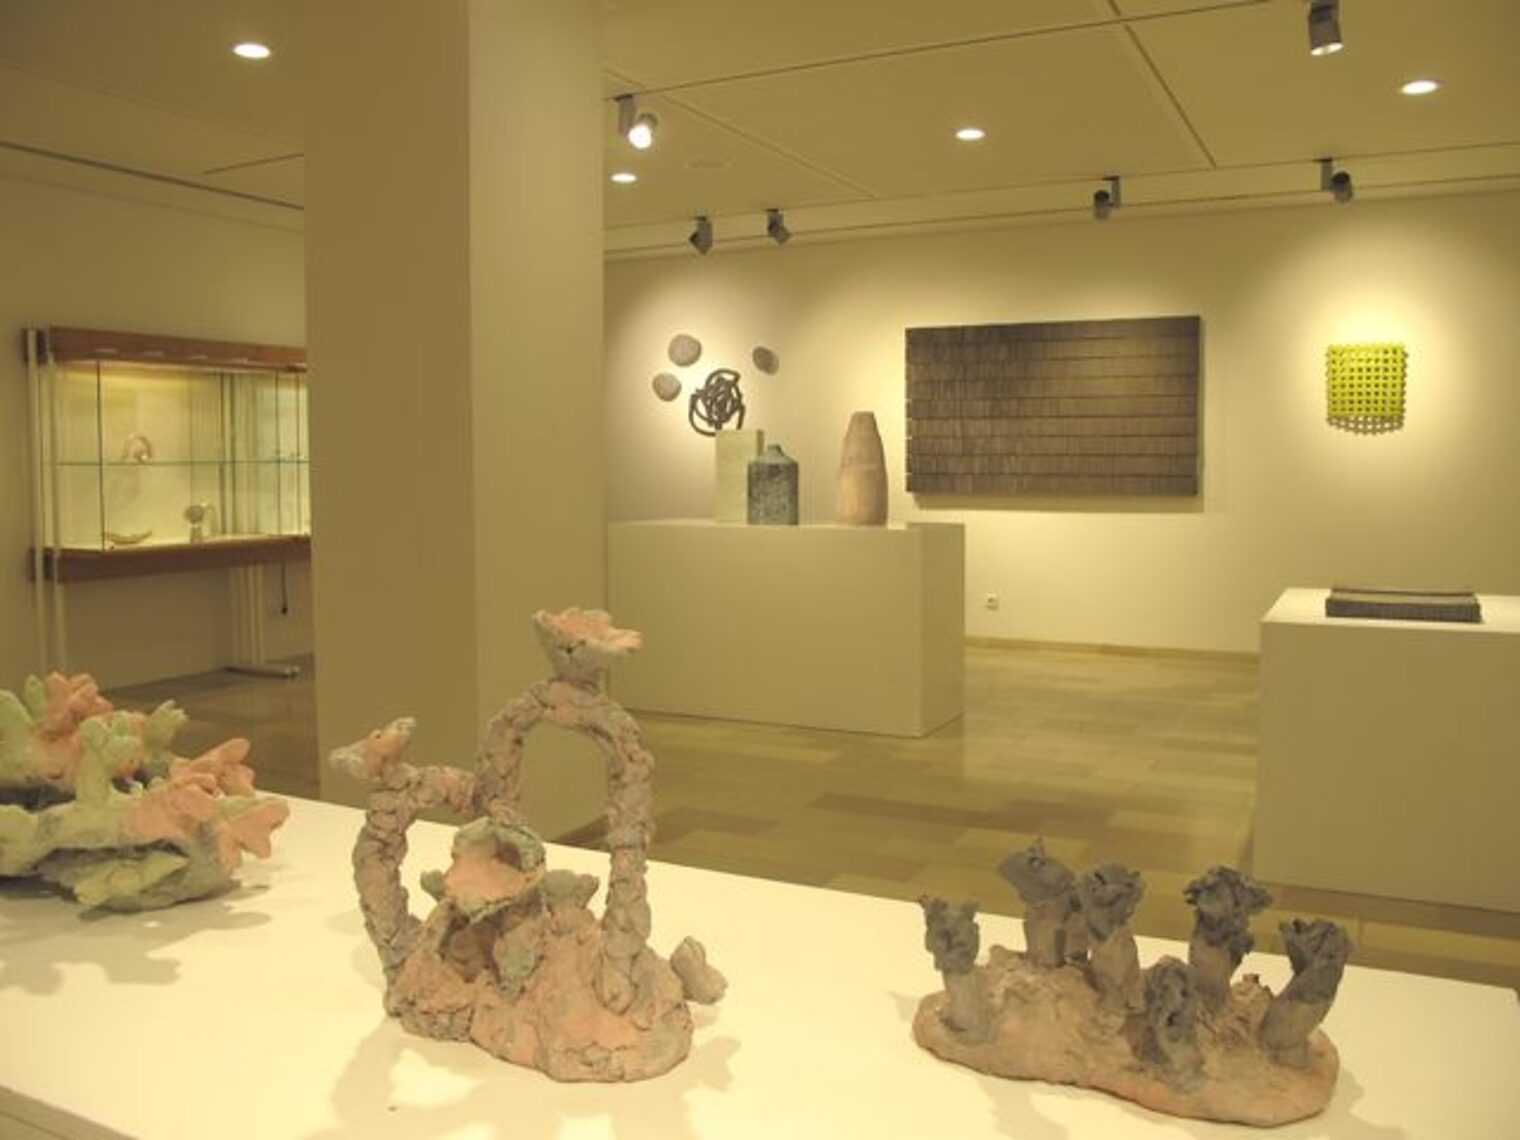 Galerie Handwerk - Keramik - geformt und gebaut